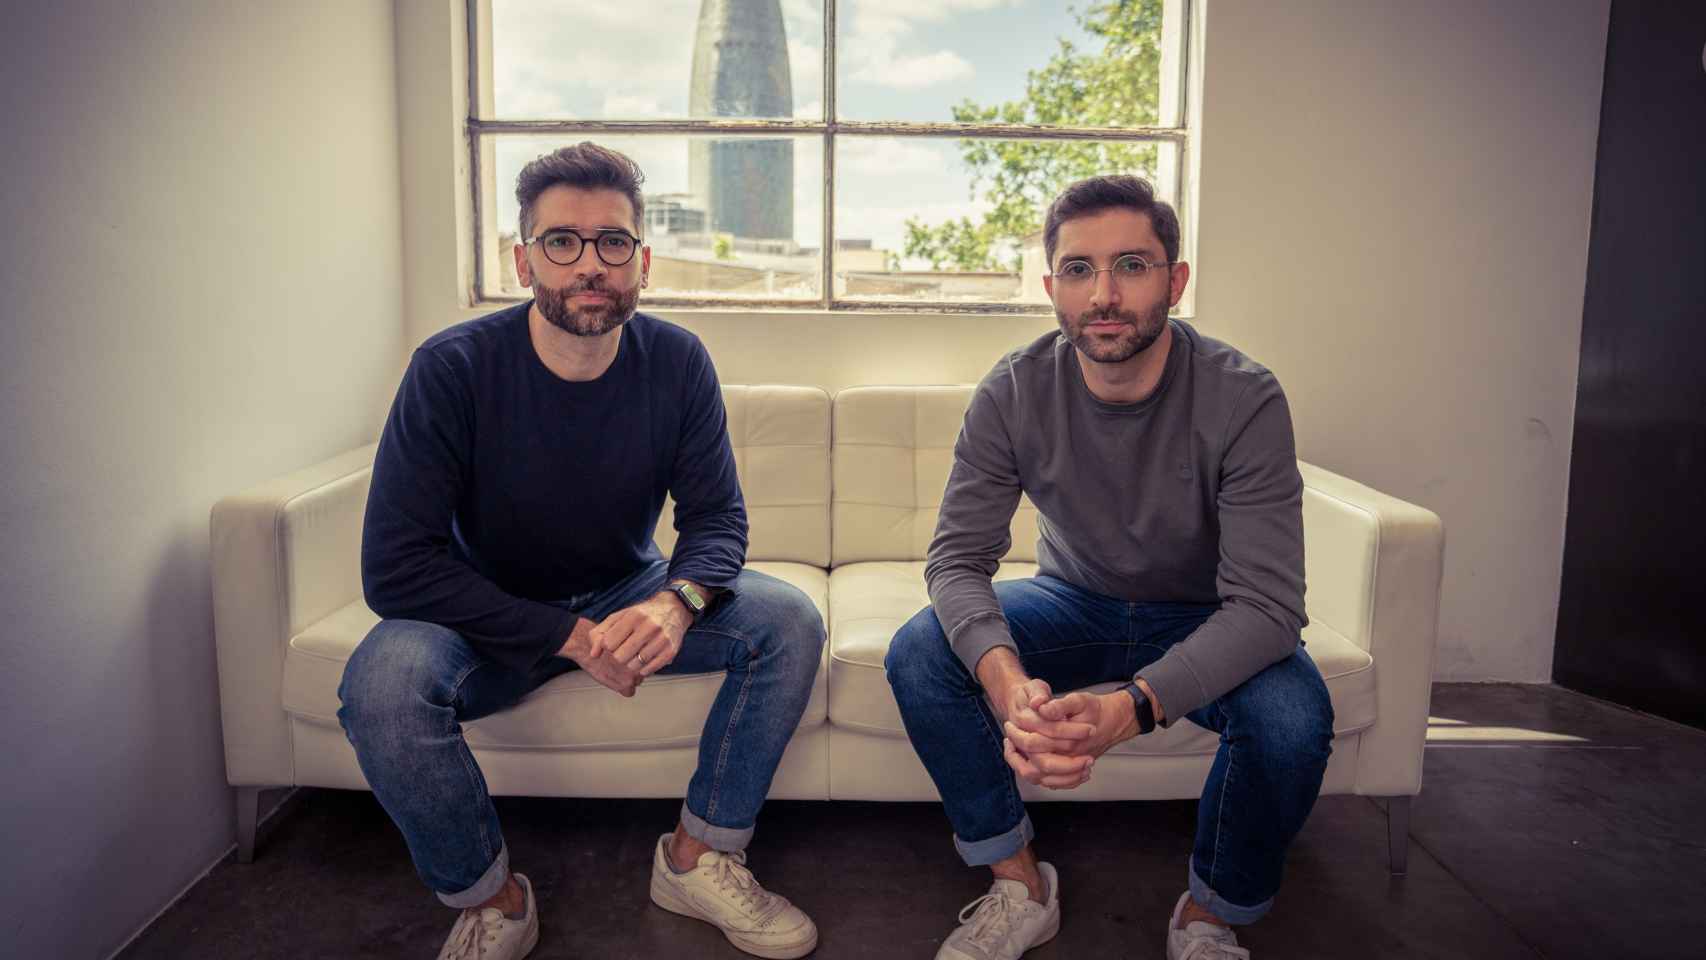 Miquel y Joan Subirats son hermanos e impulsores de la startup StockAgile.